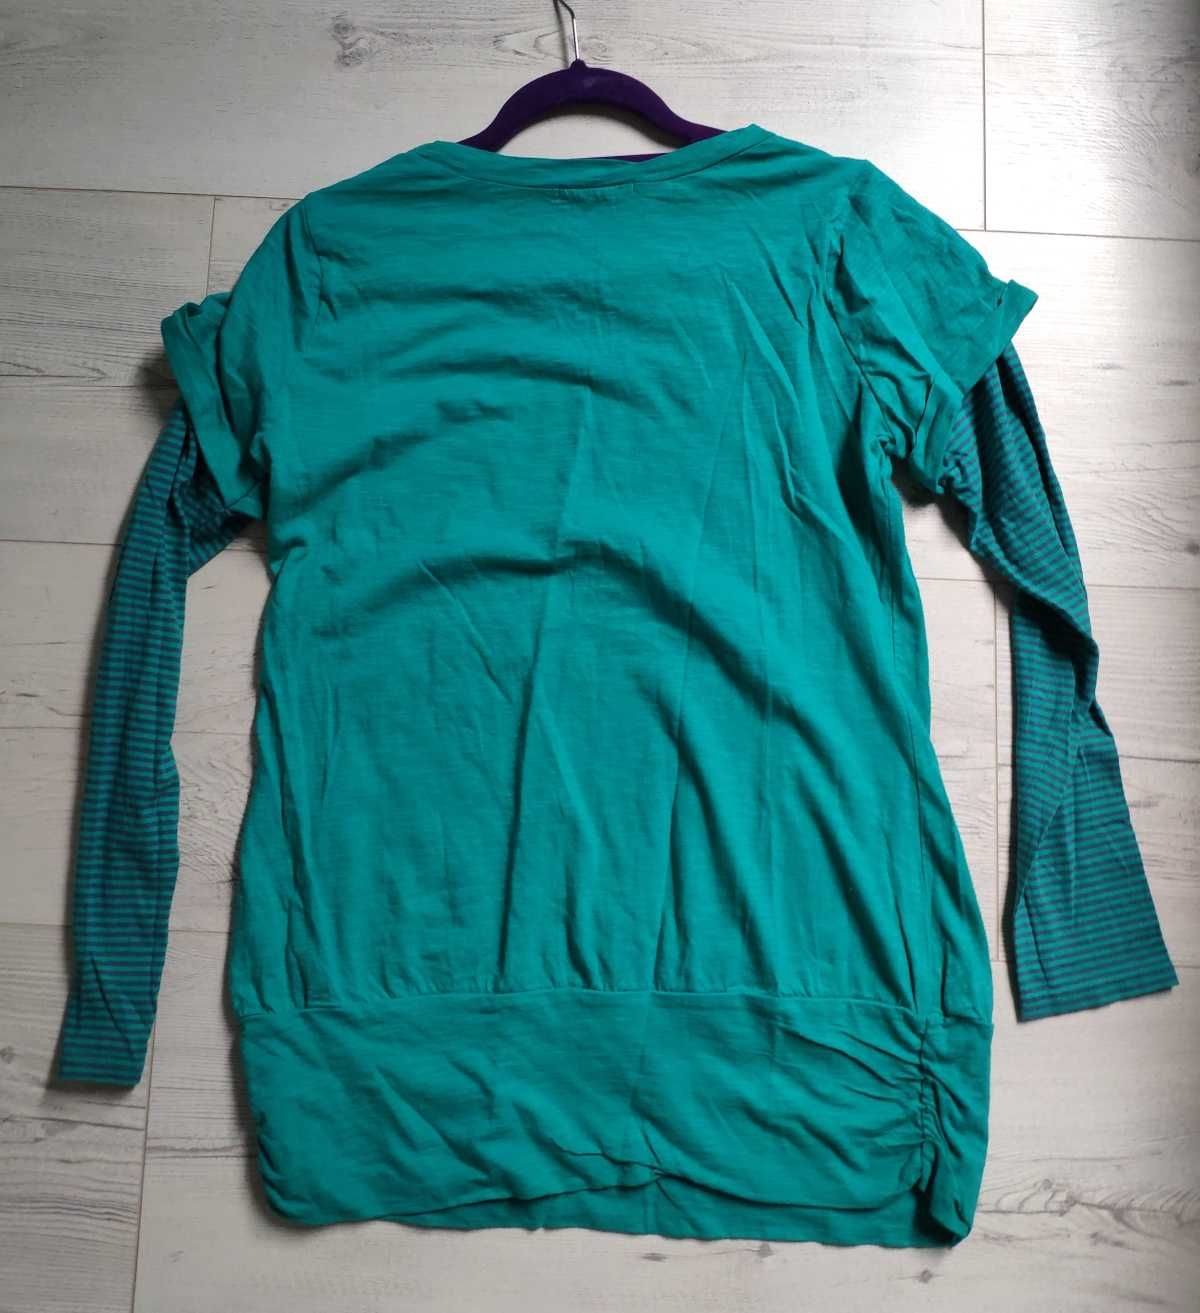 Podwójna bluzka sportowa zielona 42